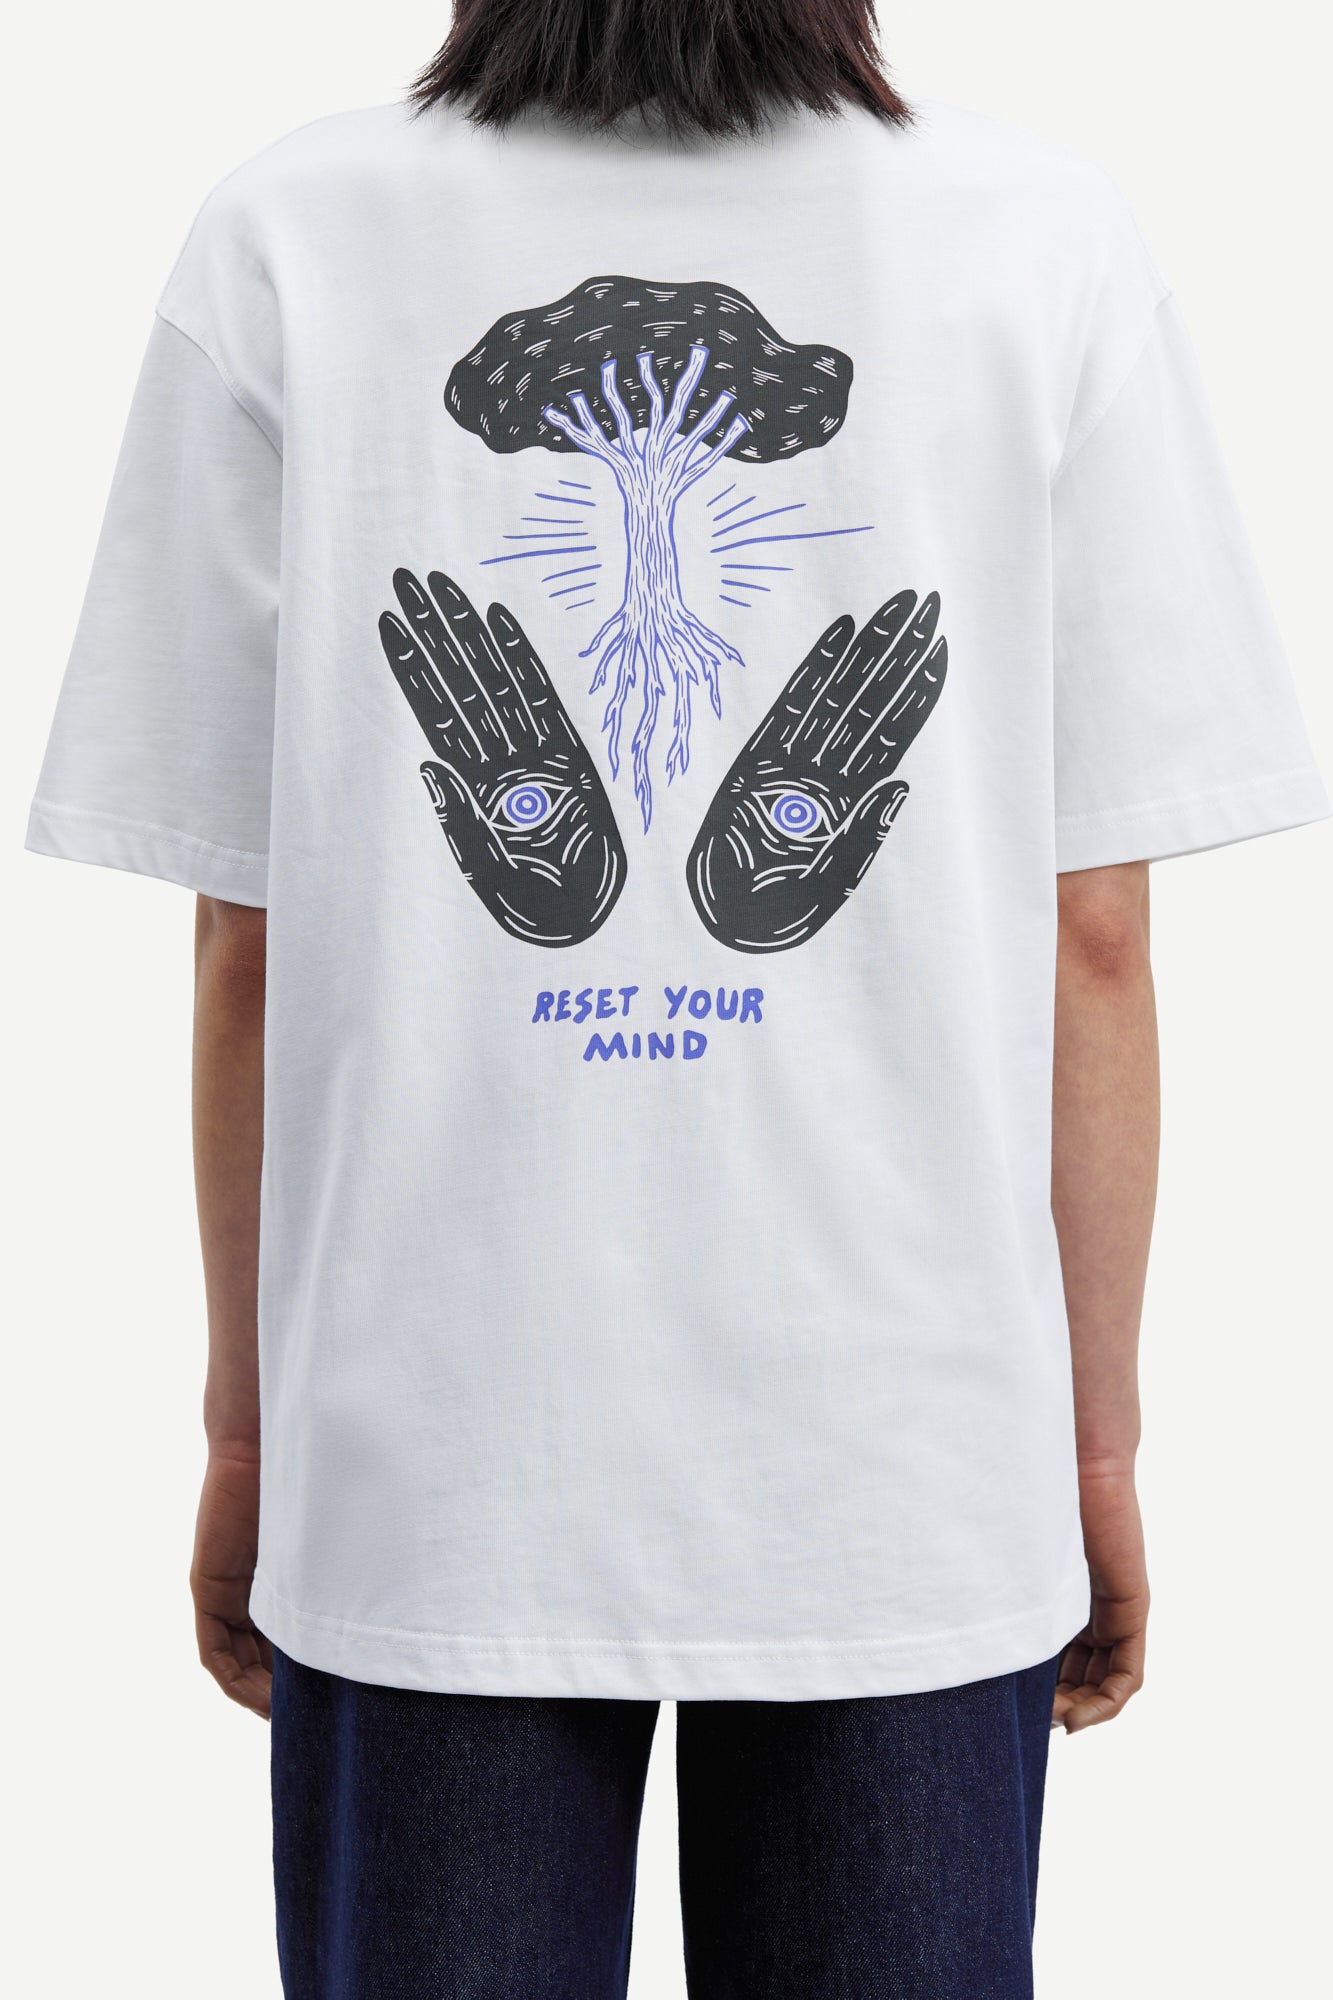 Handsforfeet T-Shirt - Reset Your Mind